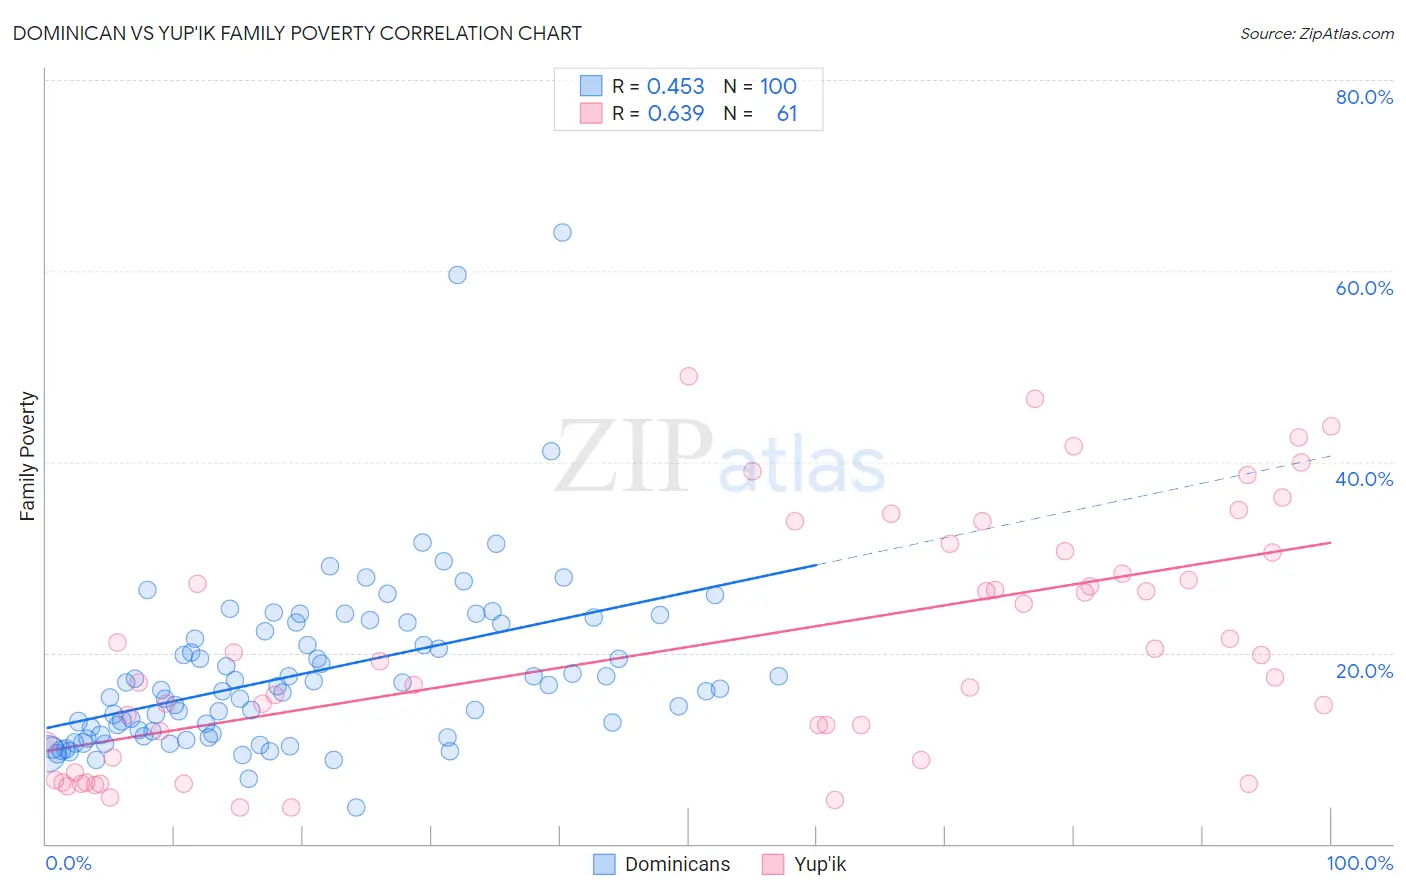 Dominican vs Yup'ik Family Poverty